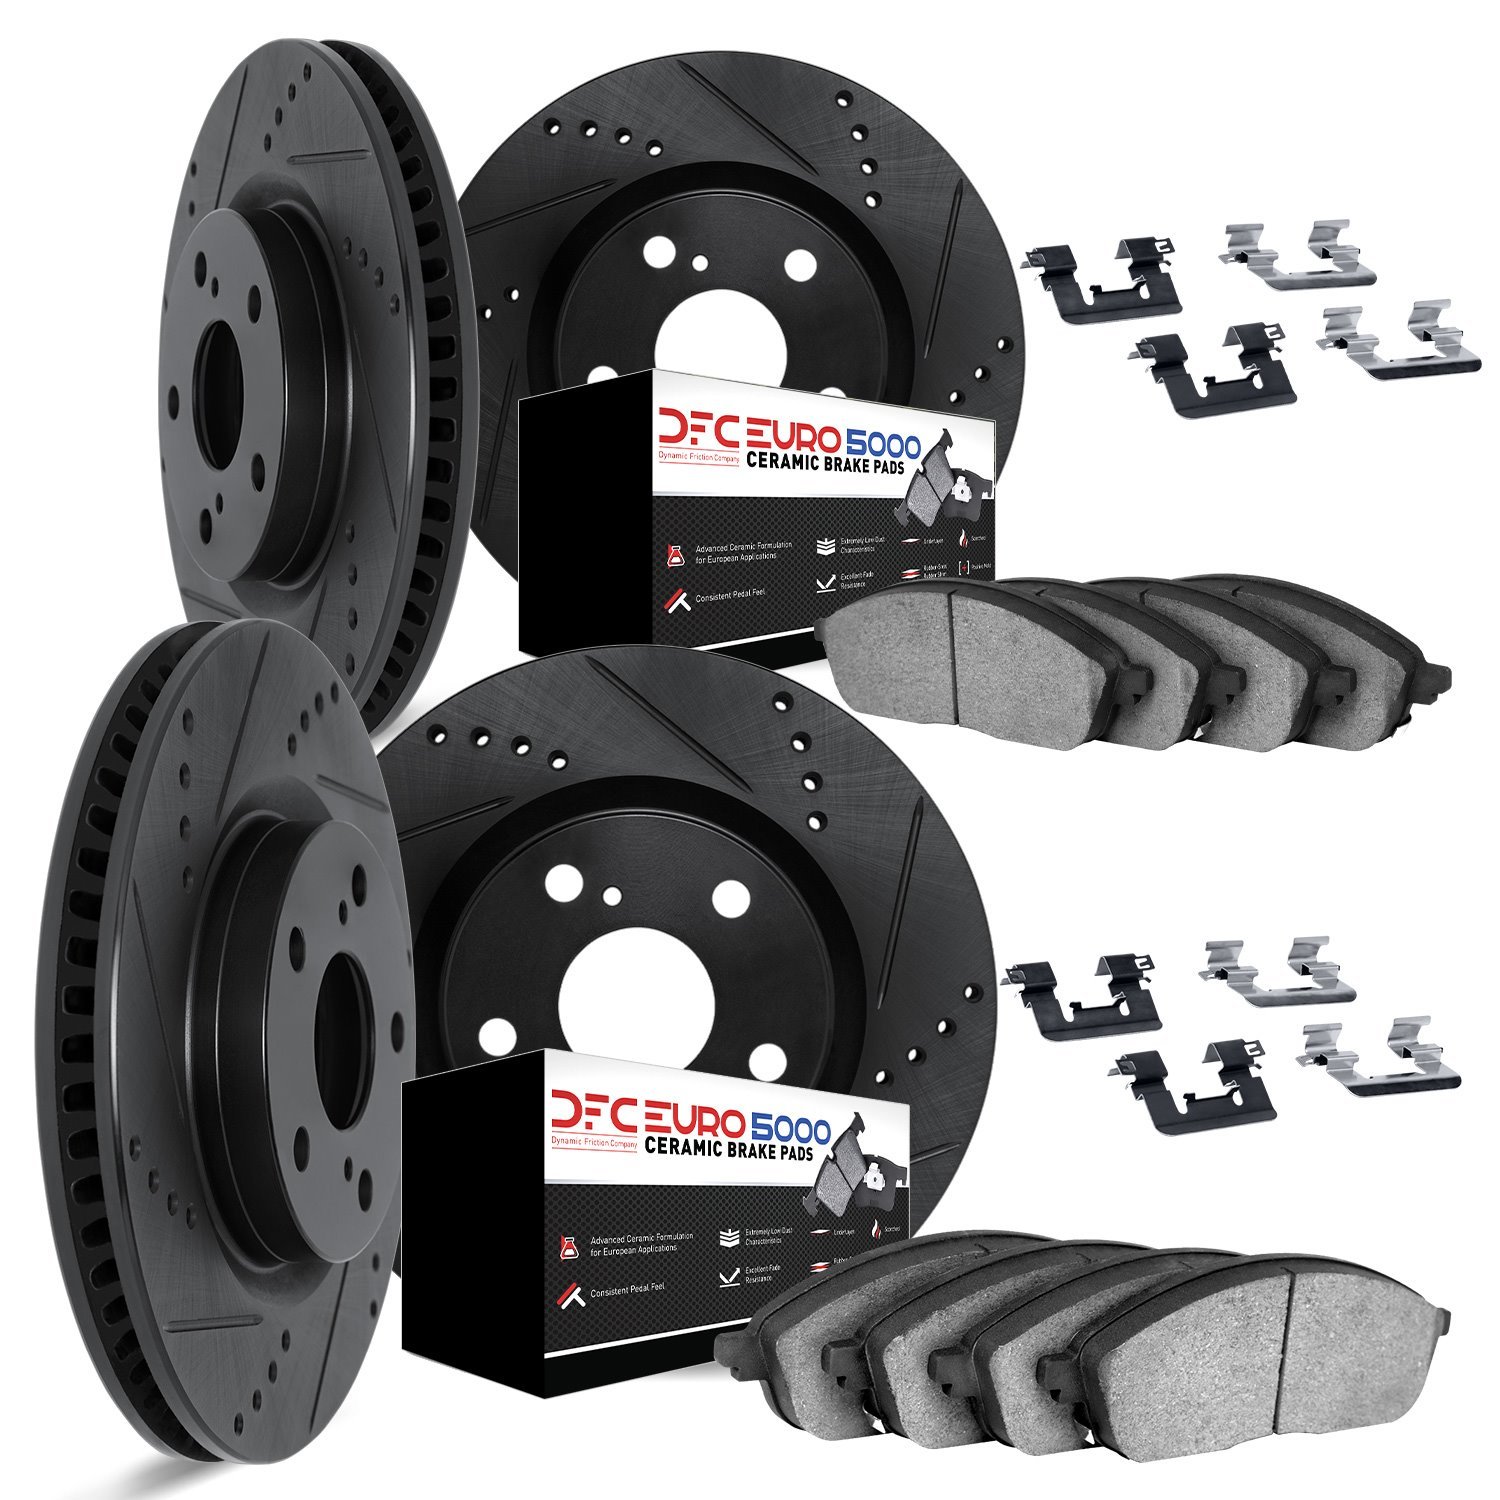 8614-75001 Drilled/Slotted Brake Rotors w/5000 Euro Ceramic Brake Pads Kit & Hardware [Black], 2007-2021 Lexus/Toyota/Scion, Pos